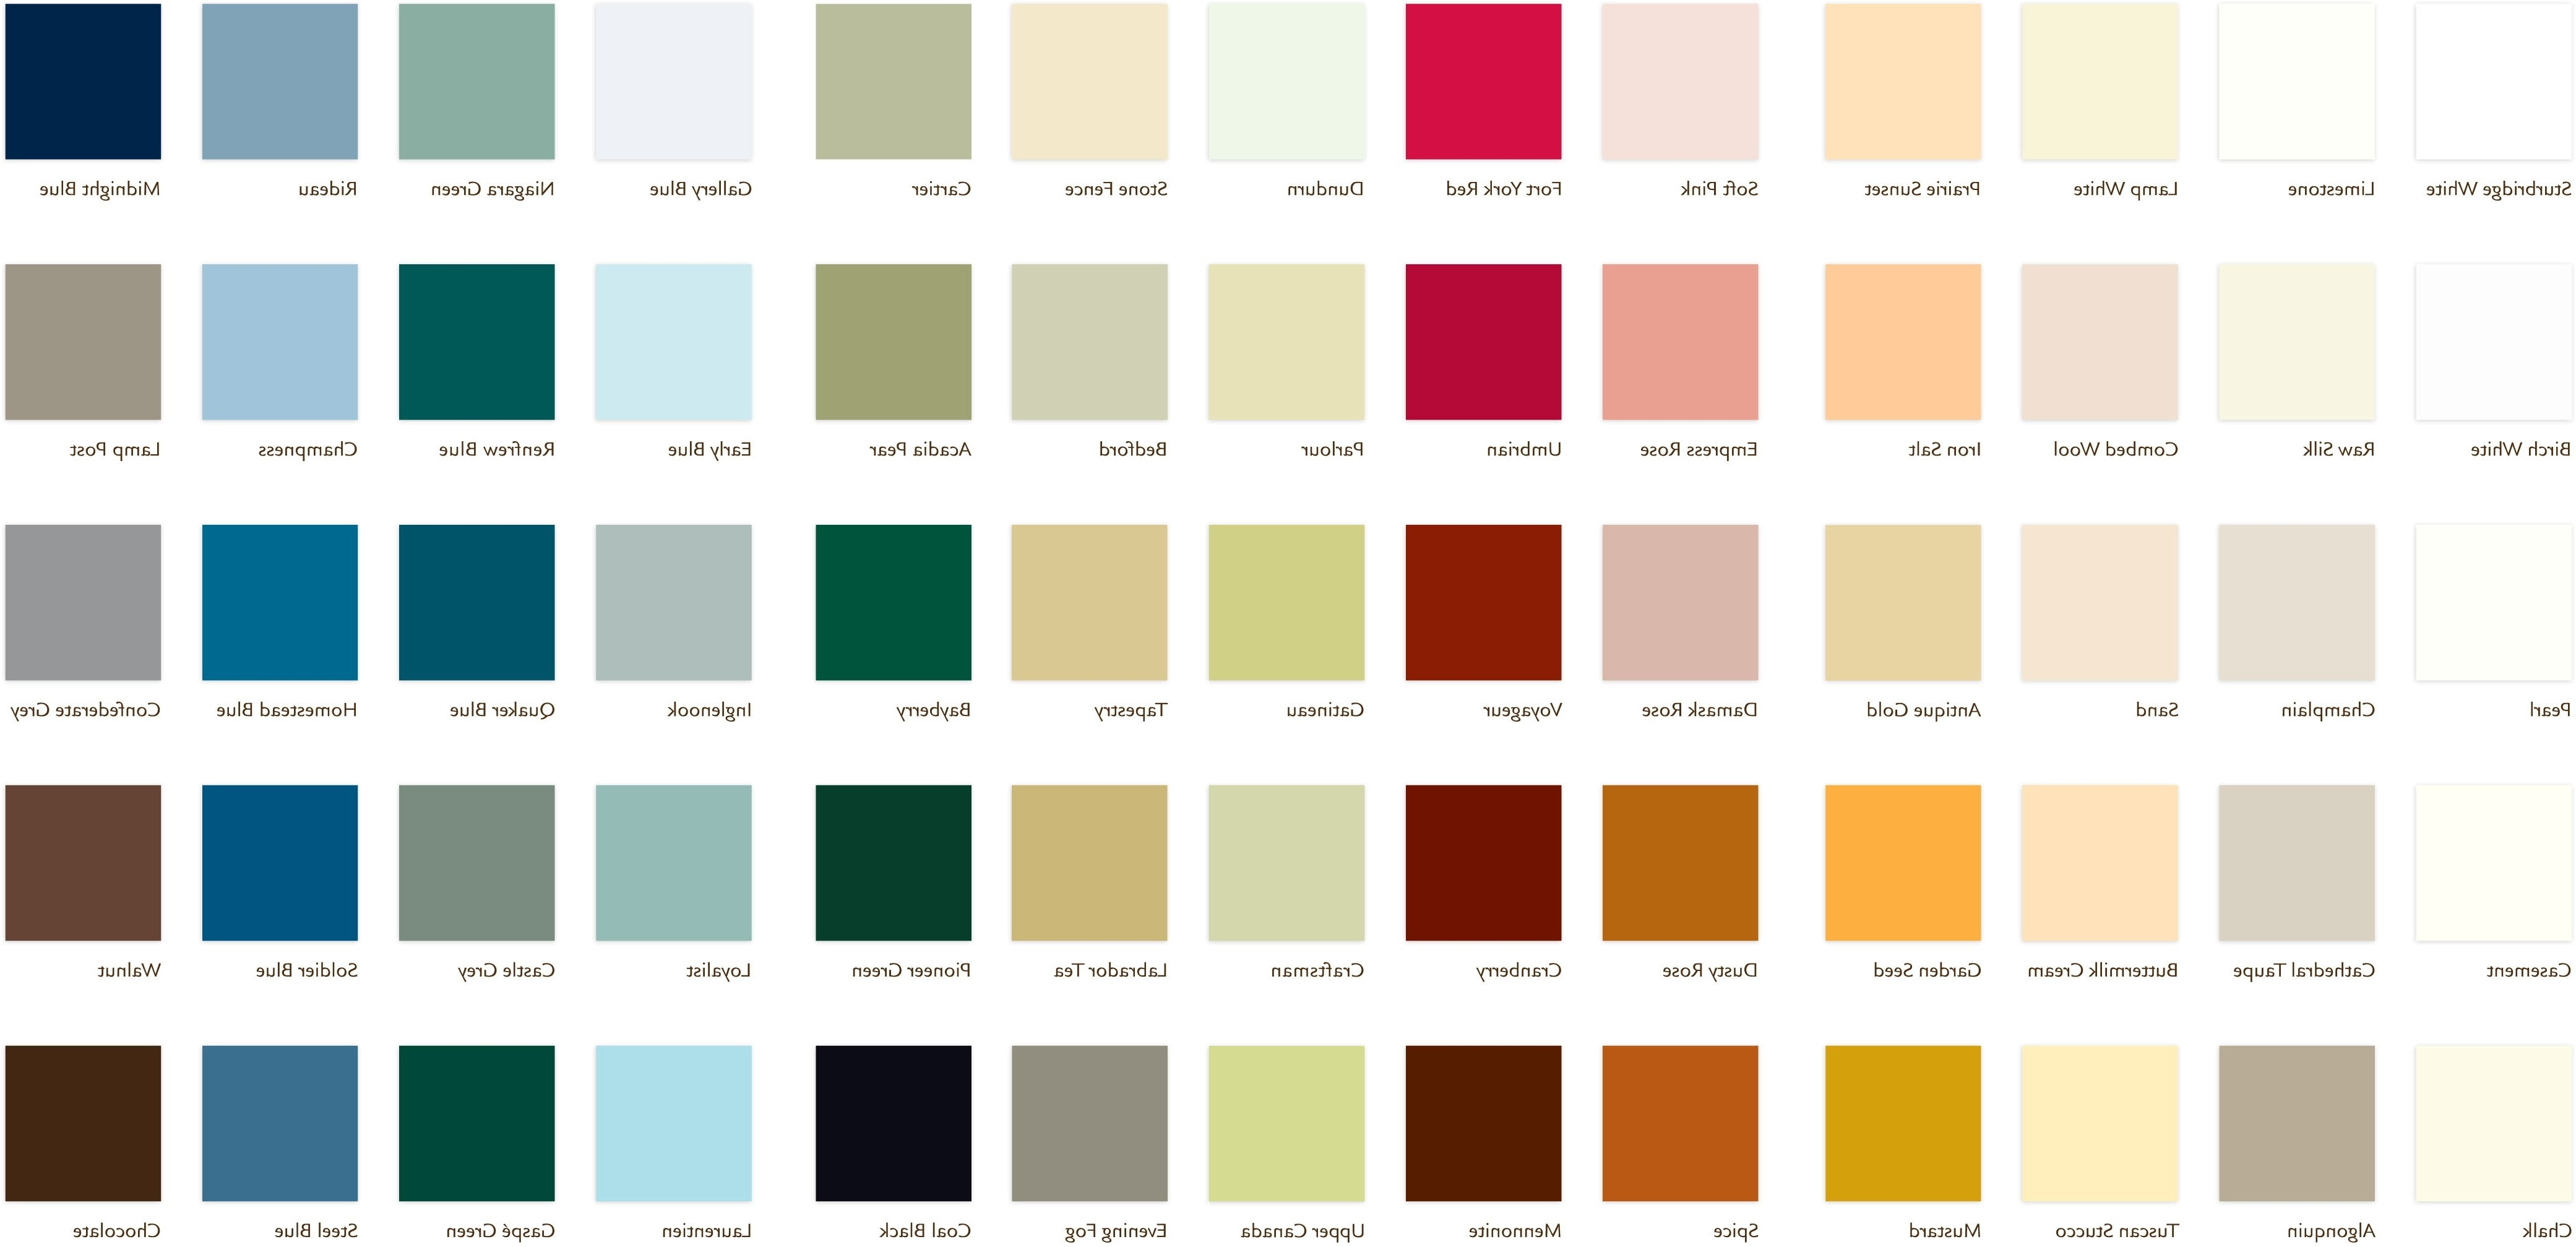 Best ideas about Paint Colors Home Depot
. Save or Pin 28 Home Depot Paint Colors For Living Rooms Behr Paint Now.